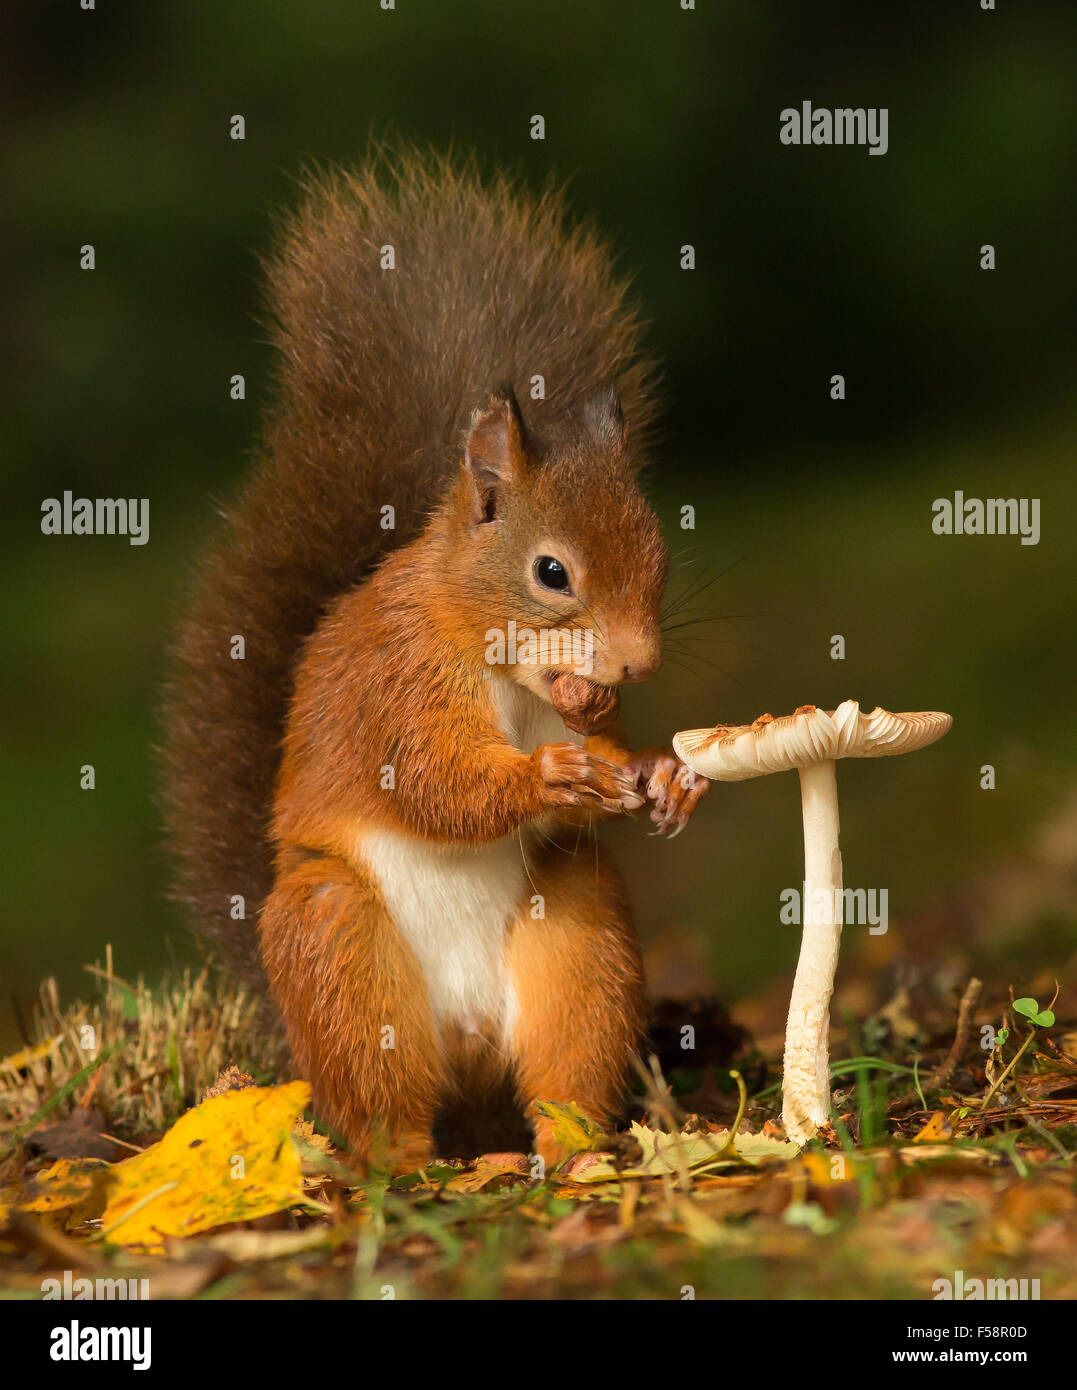 Écureuil rouge avec une noisette dans sa bouche debout près d'un champignon vénéneux donnant l'impression d'une table à manger Banque D'Images